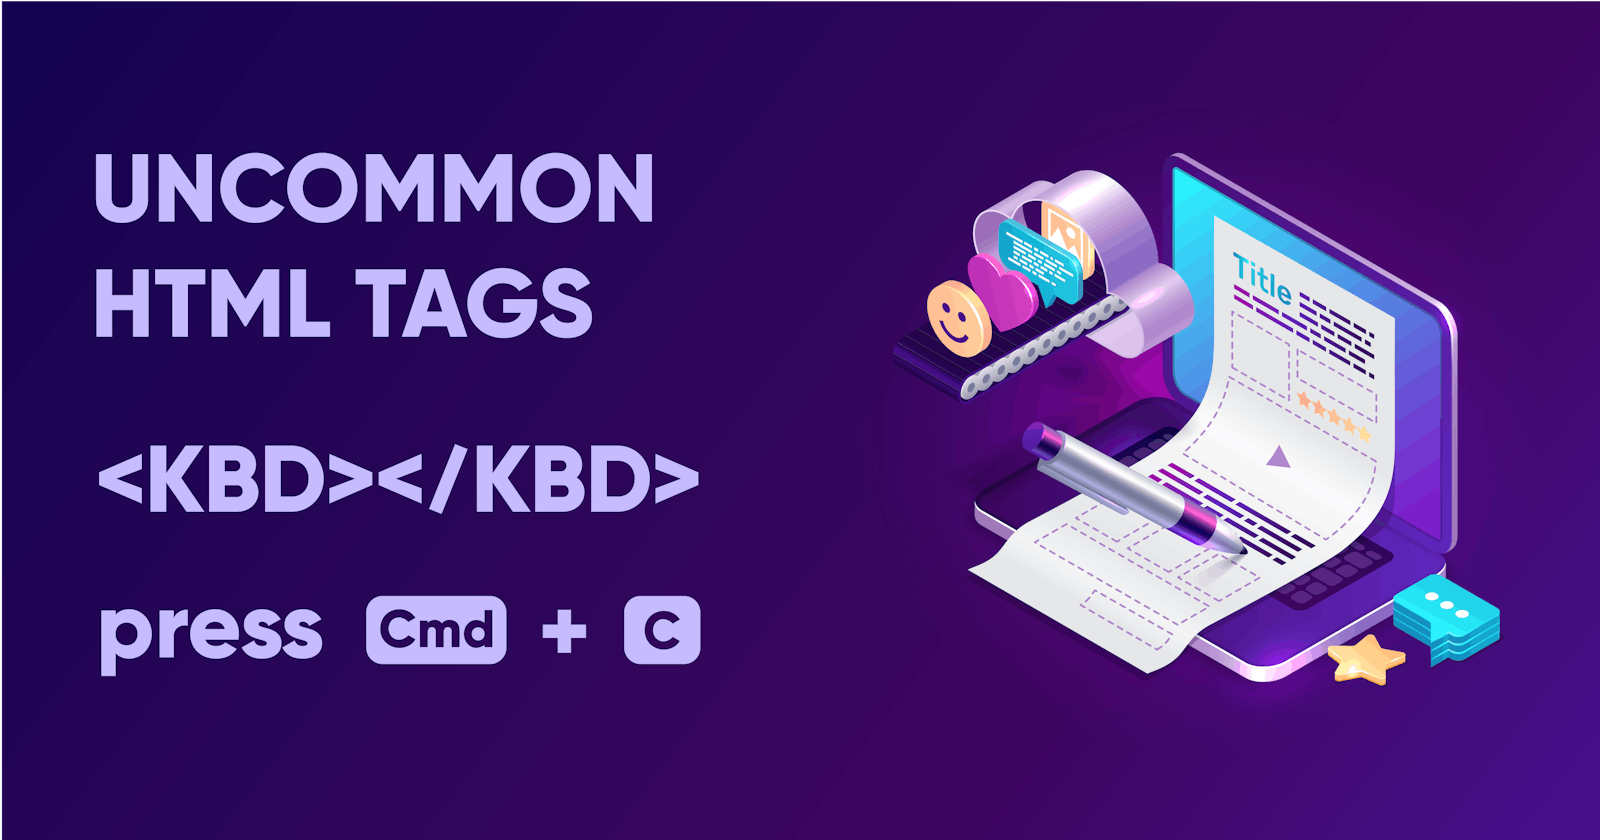 The kbd HTML Tag